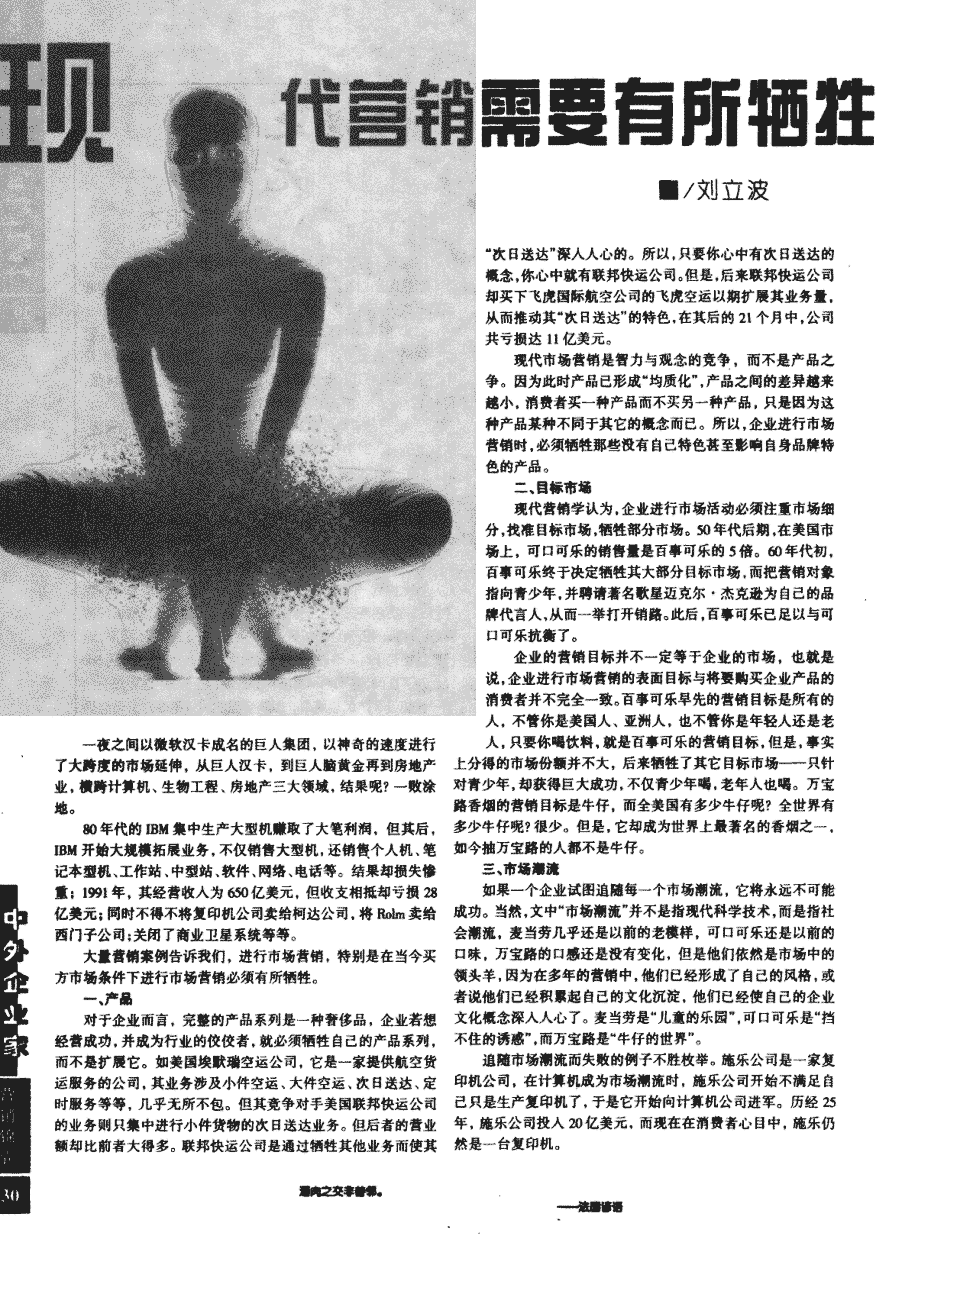 《中外企业家》1998年第9期30-30,共1页刘立波